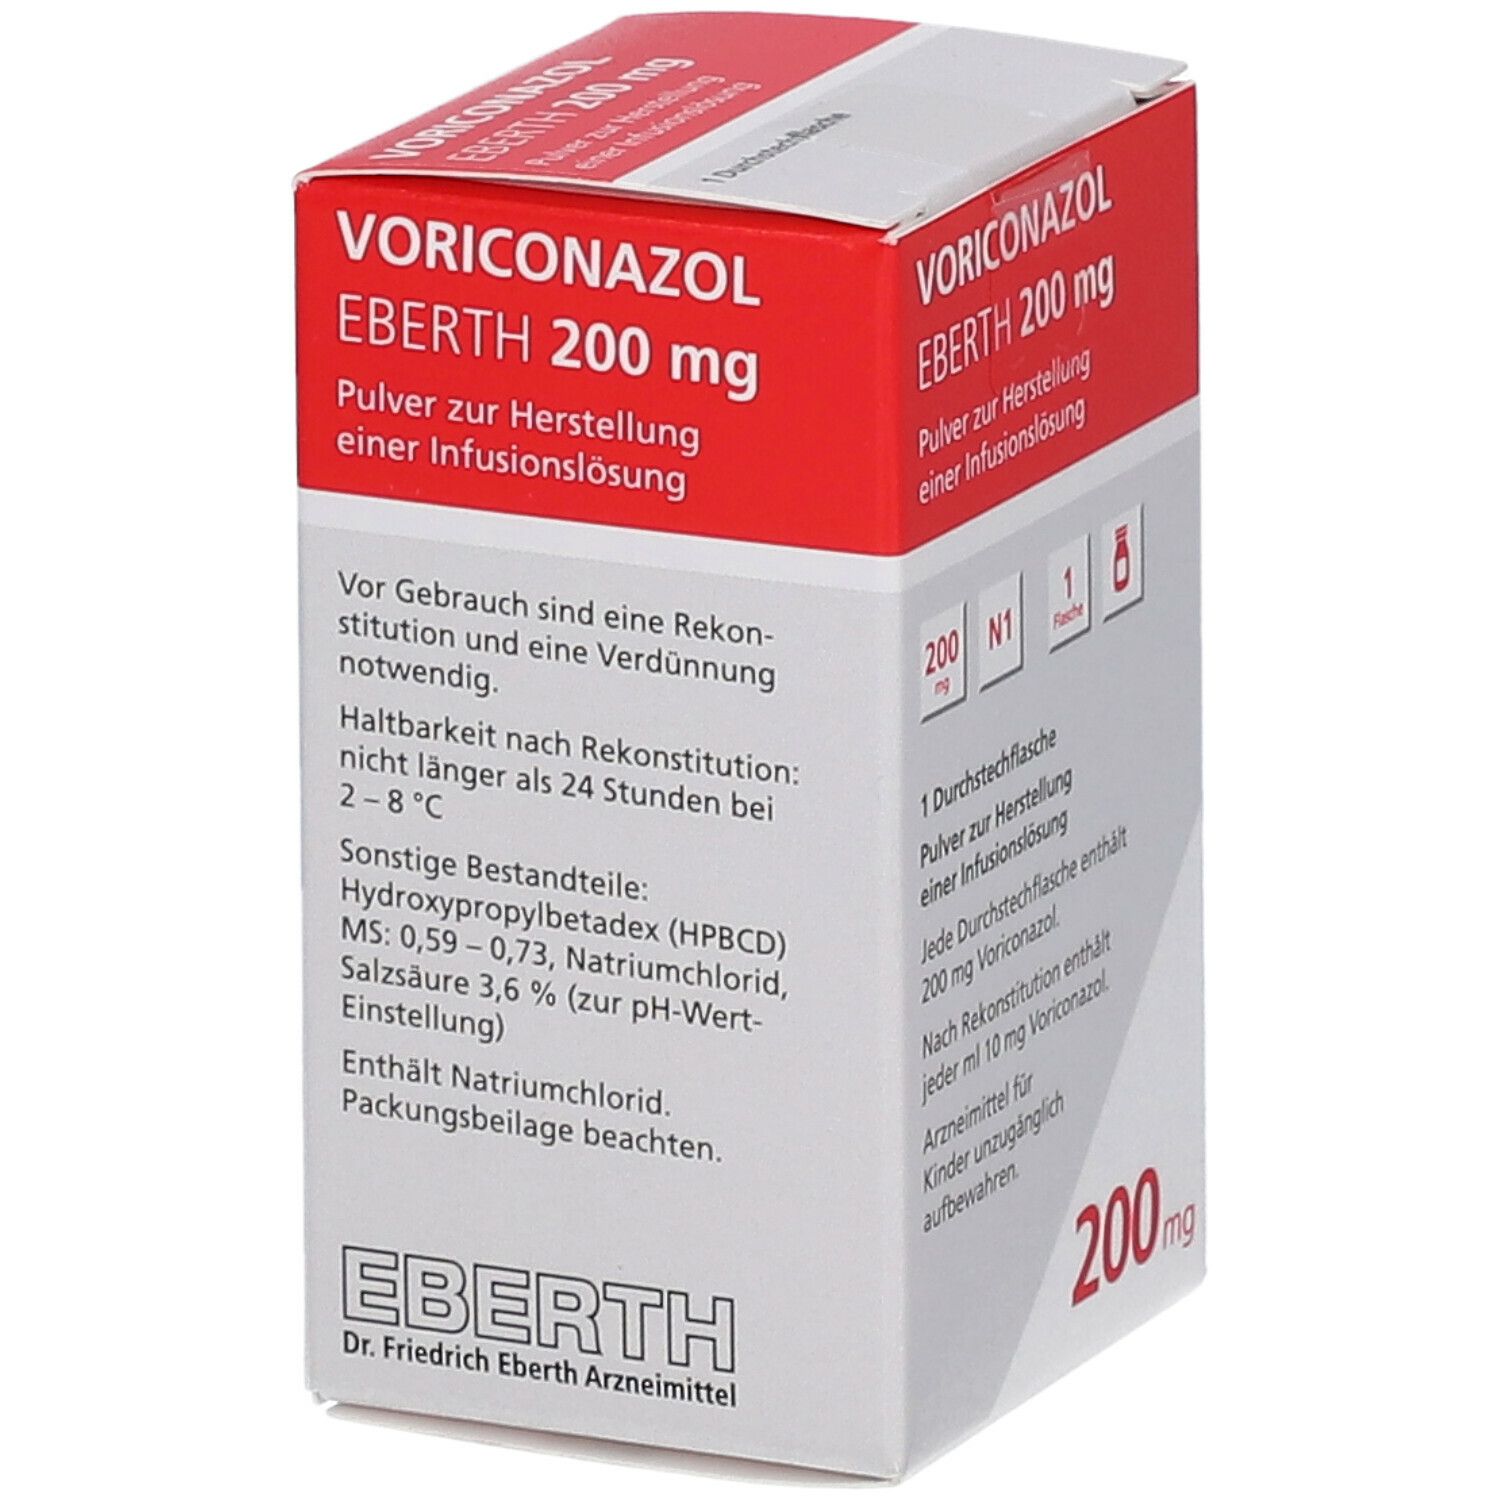 VORICONAZOL EBERTH 200 mg